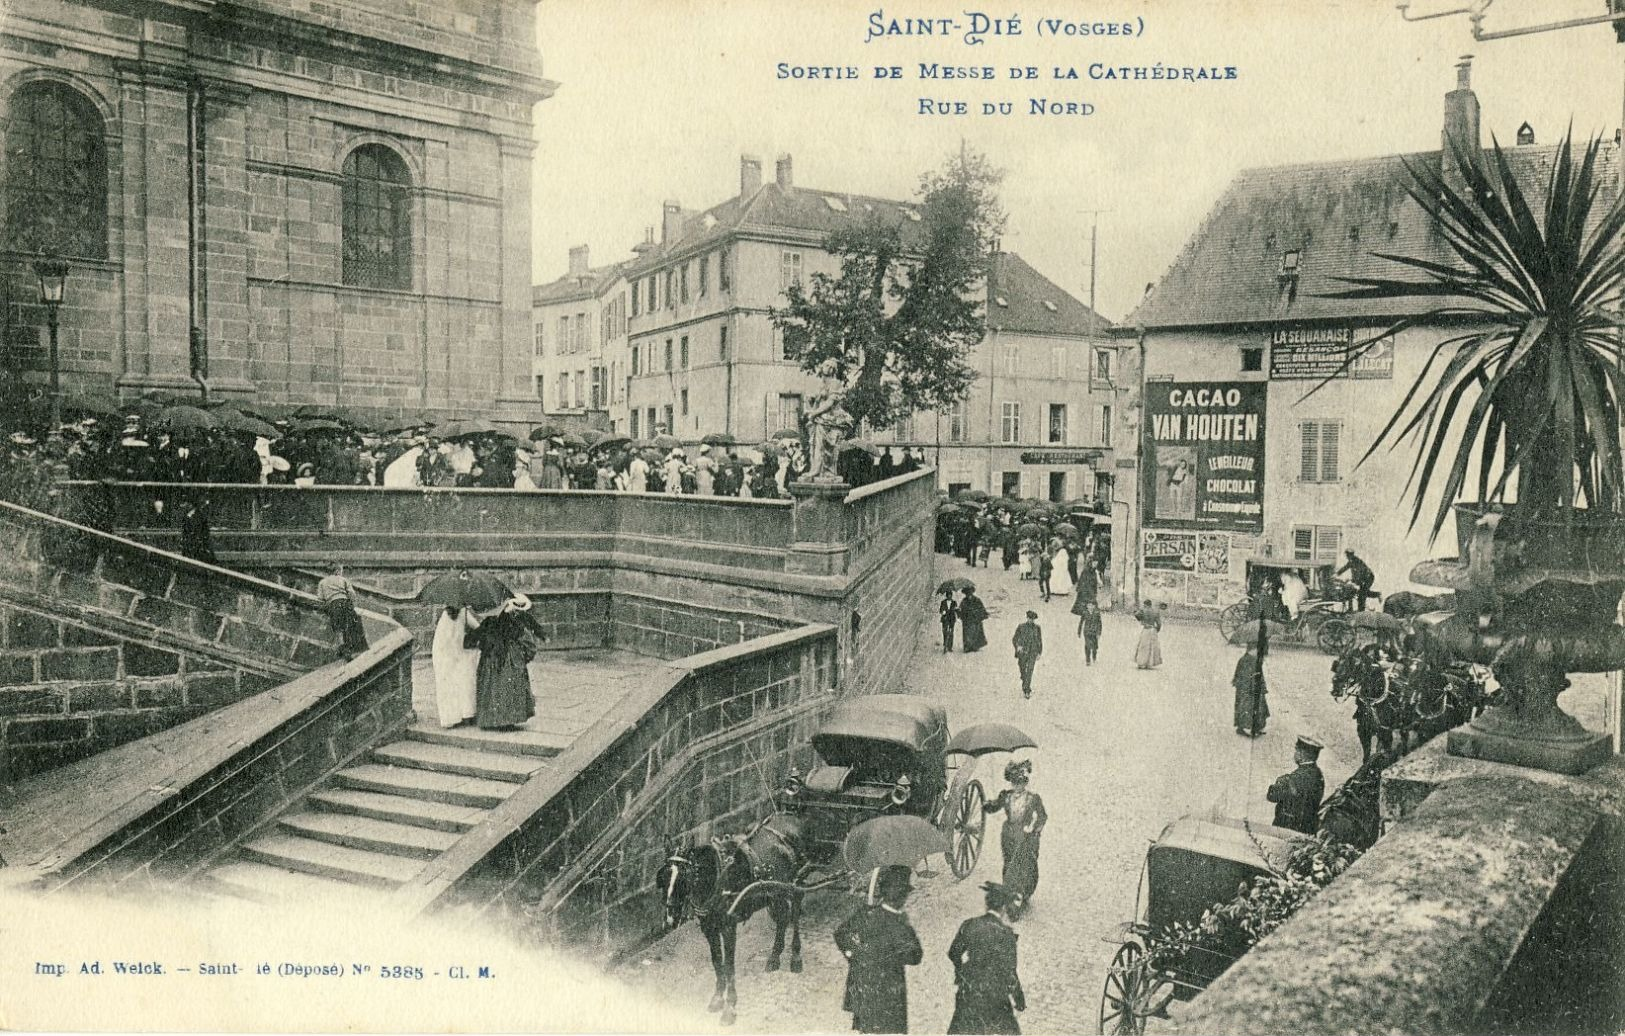 SAINT-DIE (Vosges) -- SORTIE  DE  MESSE  DE  LA  CATHEDRALE -- RUE  DU  NORD - Saint Die